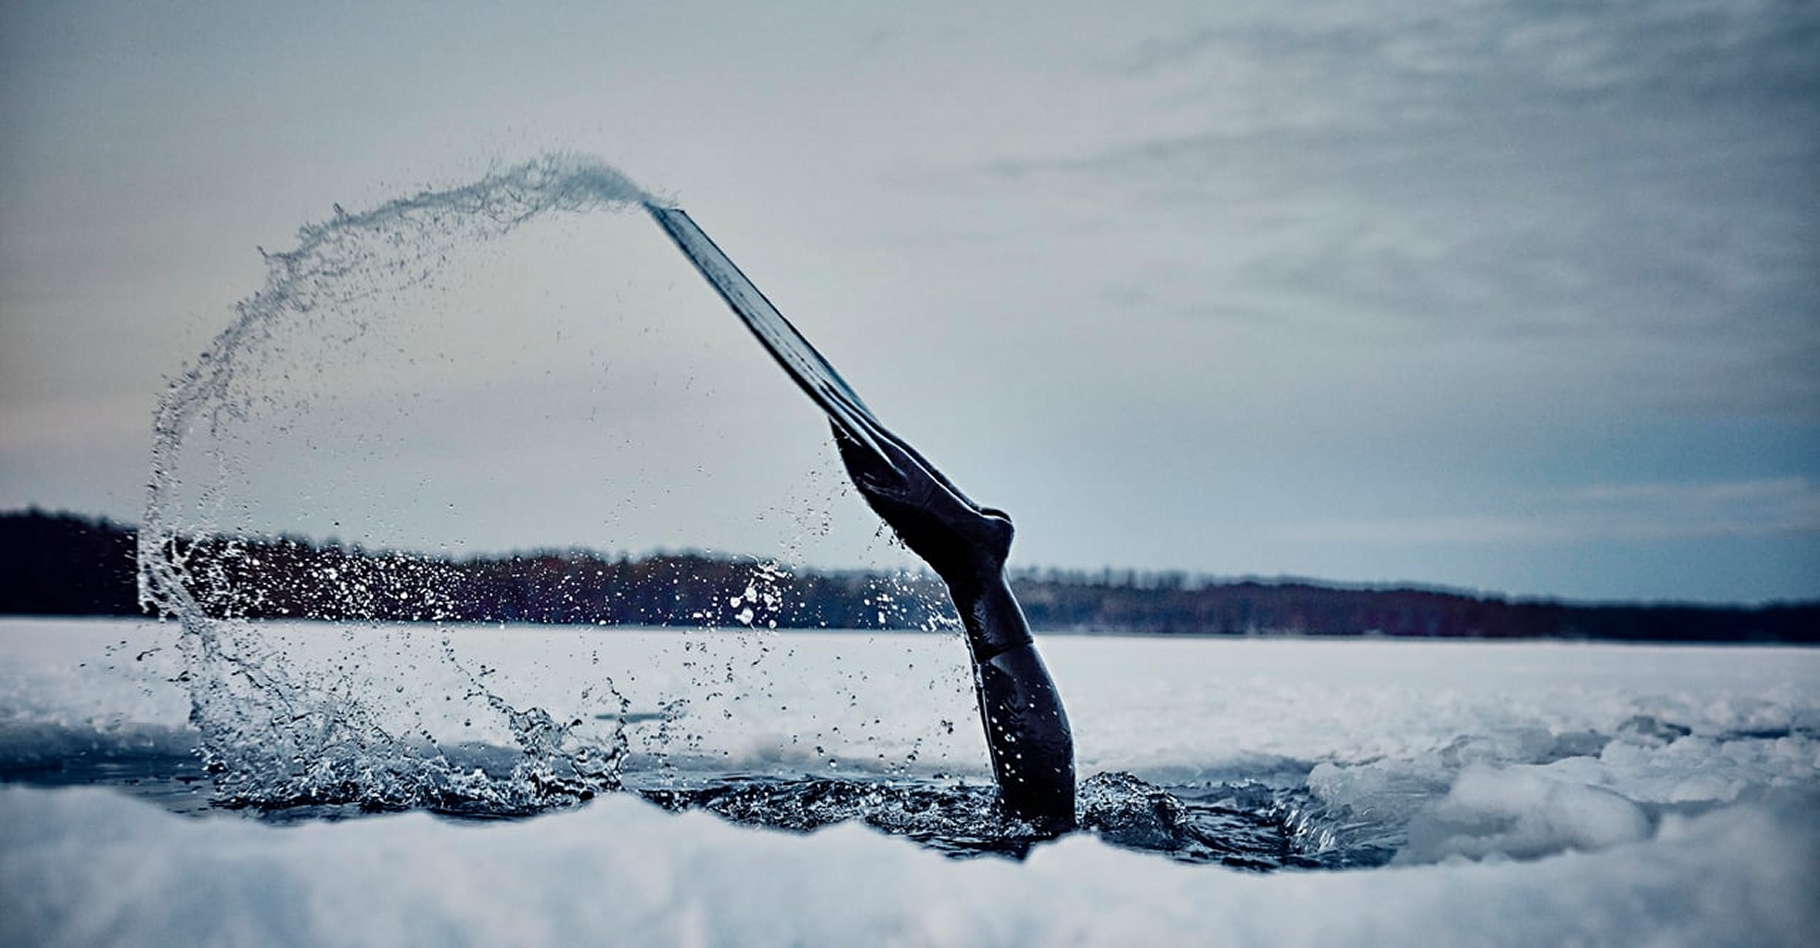 La plongée sous la glace se fait en principe avec du matériel lourd : combinaison étanche, bouteilles, filins de sécurité... Johanna Nordblad, elle, descend en apnée. © Nowness, Viméo